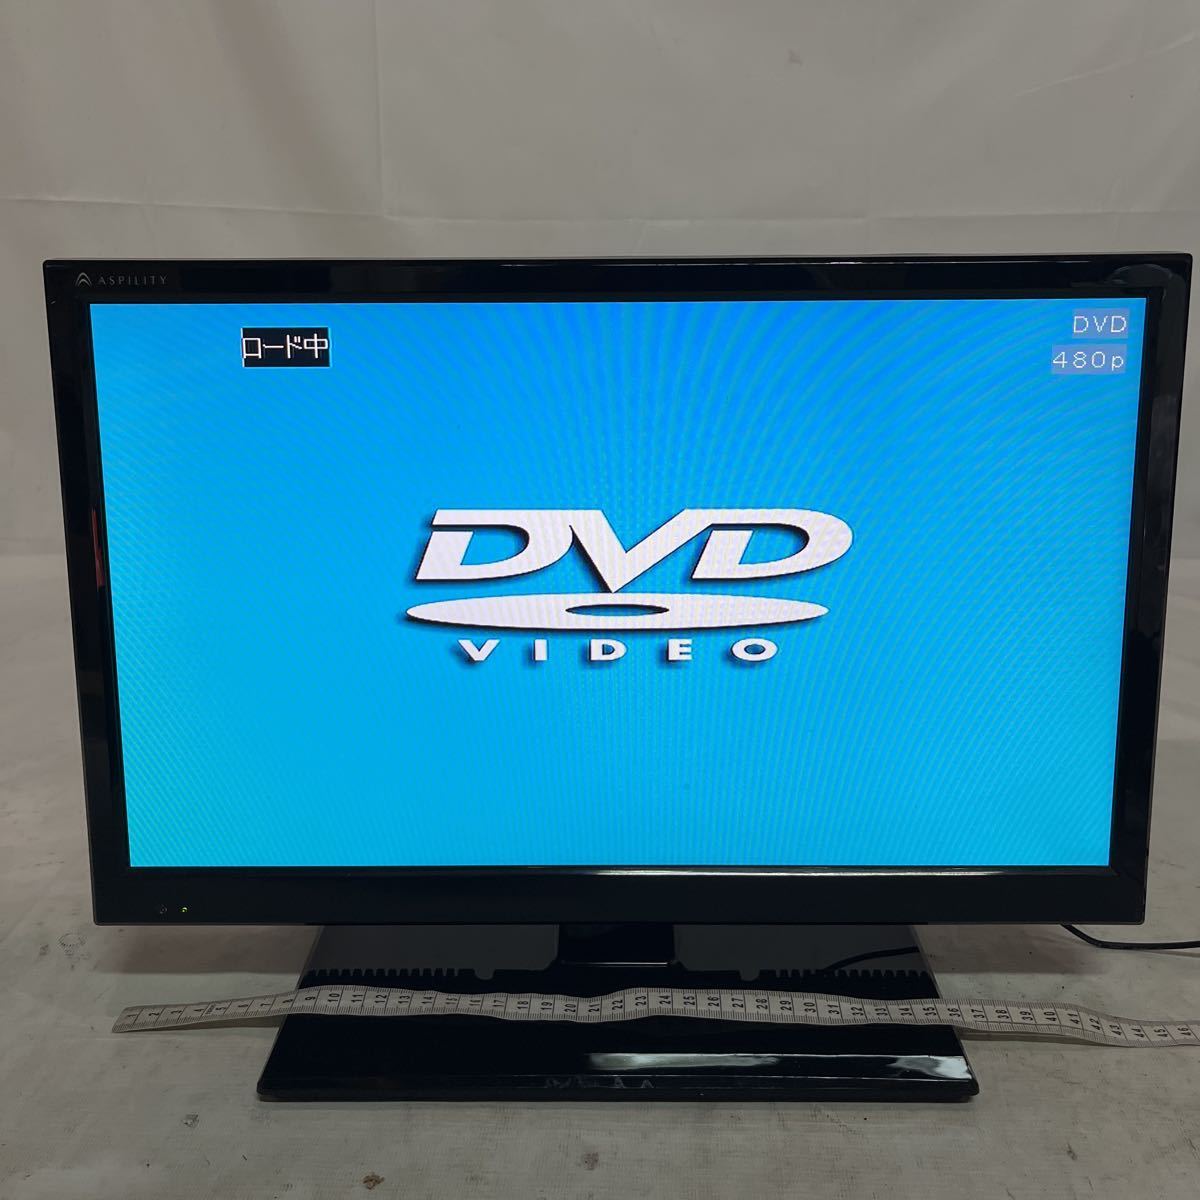 【ジャンク品】DVD付き19V型デジタルハイビジョン液晶テレビ 。19DTV-01。2015年製。ASPILITY。_画像4